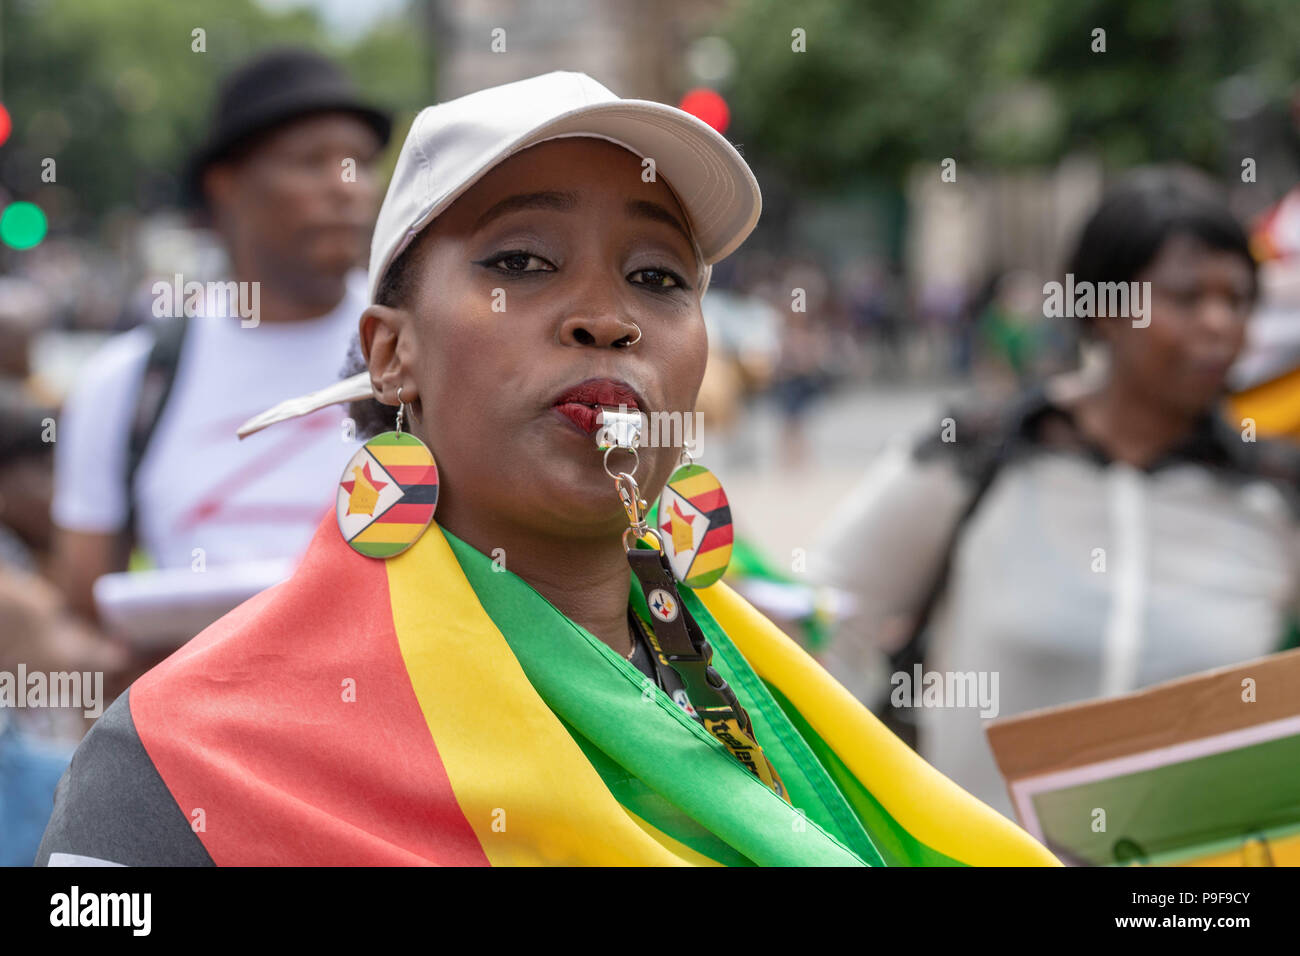 Londra 18 luglio 2018 UK zimbabwani protesta al di fuori della House of Commons contro le deportazioni forzate allo Zimbabwe di immigrati clandestini di credito DavidsonAlamy Ian Live News Foto Stock